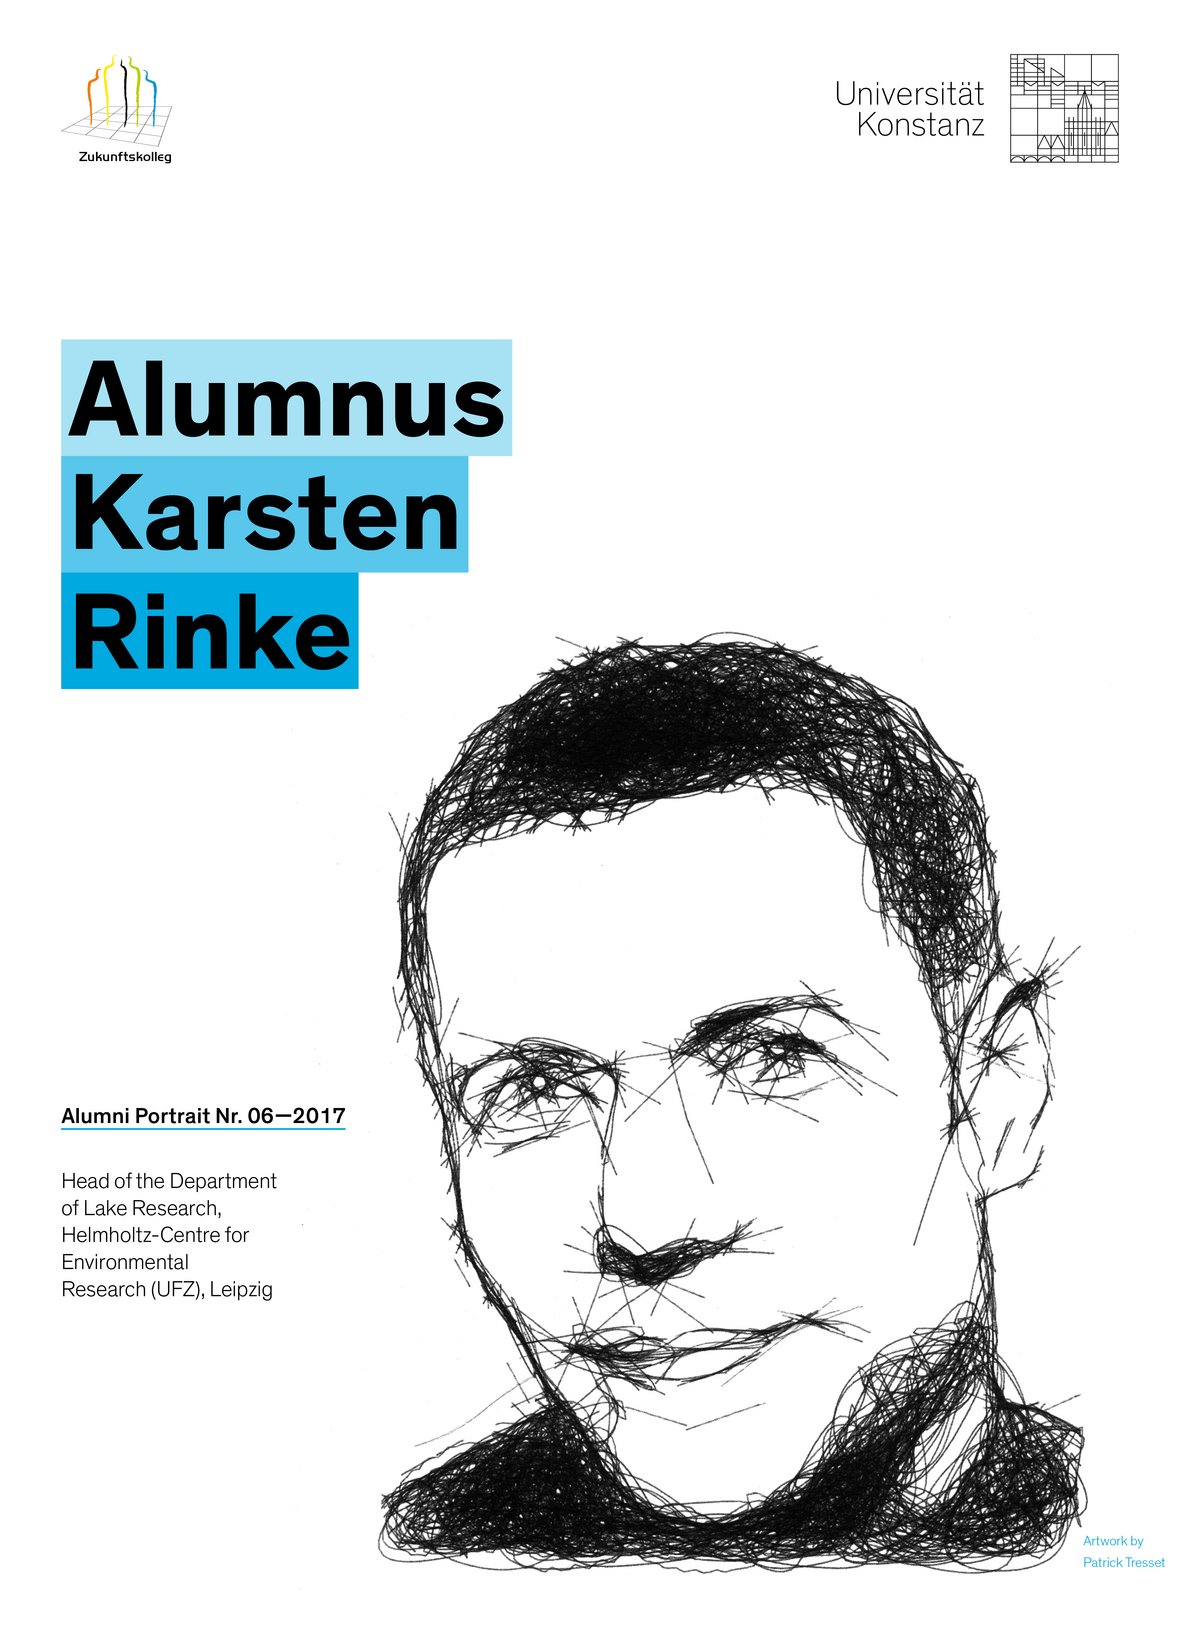 Poster ALumni Karsten Rinke